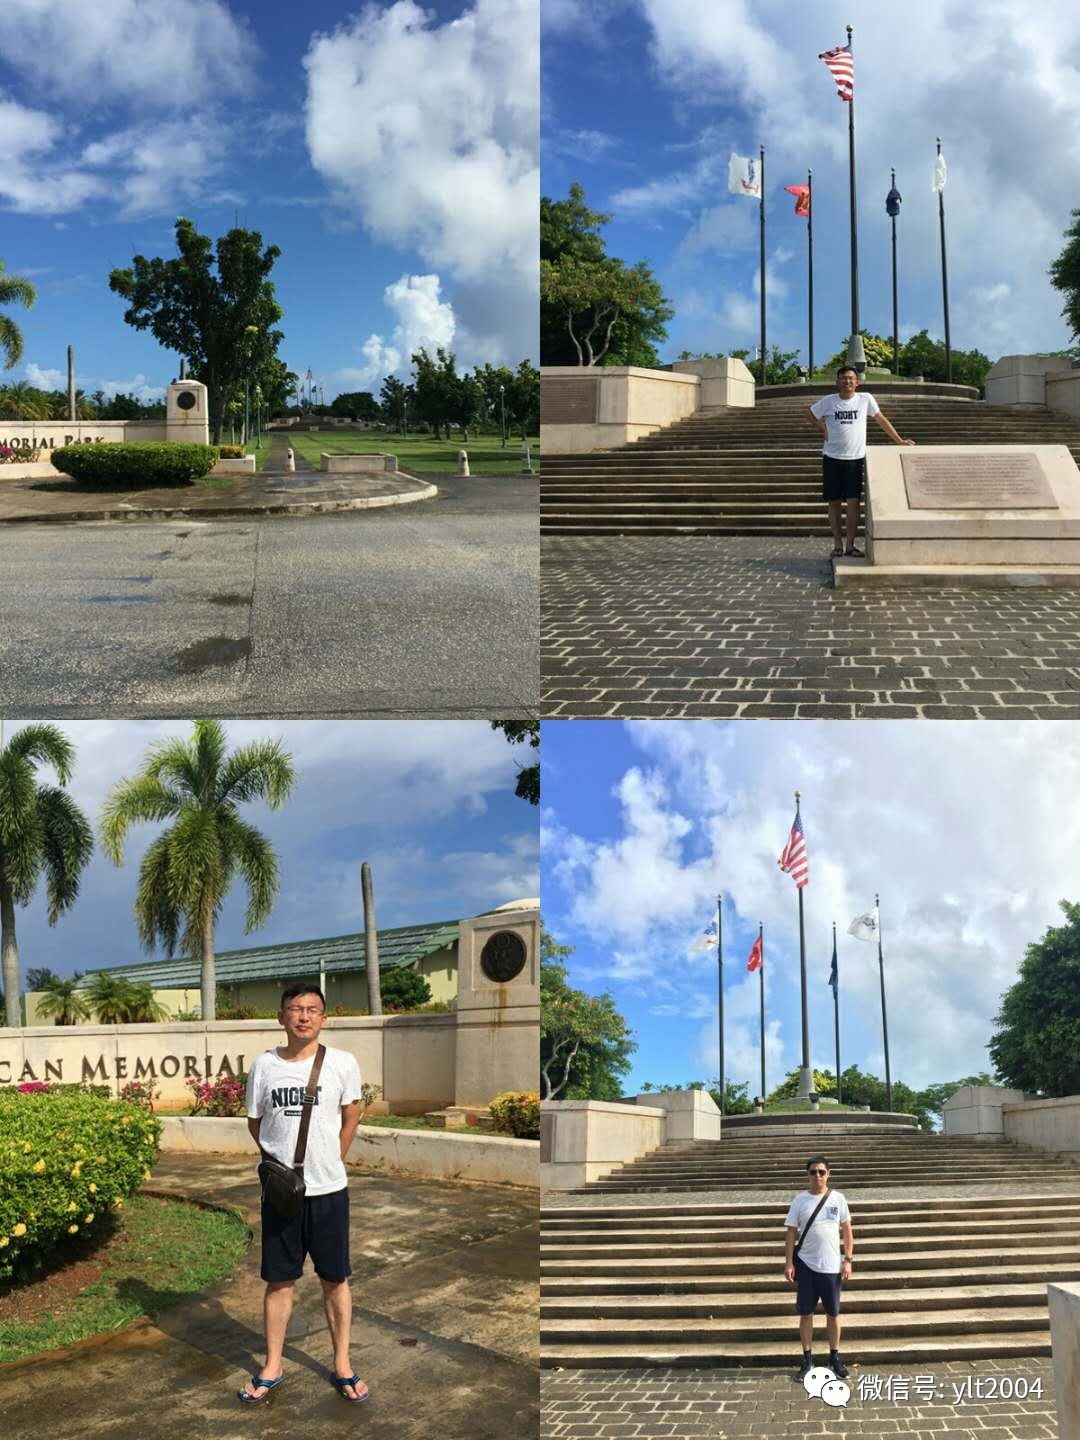 塞班岛美国纪念公园中央以蔚蓝的天空为背景竖立着国旗及纪念塔